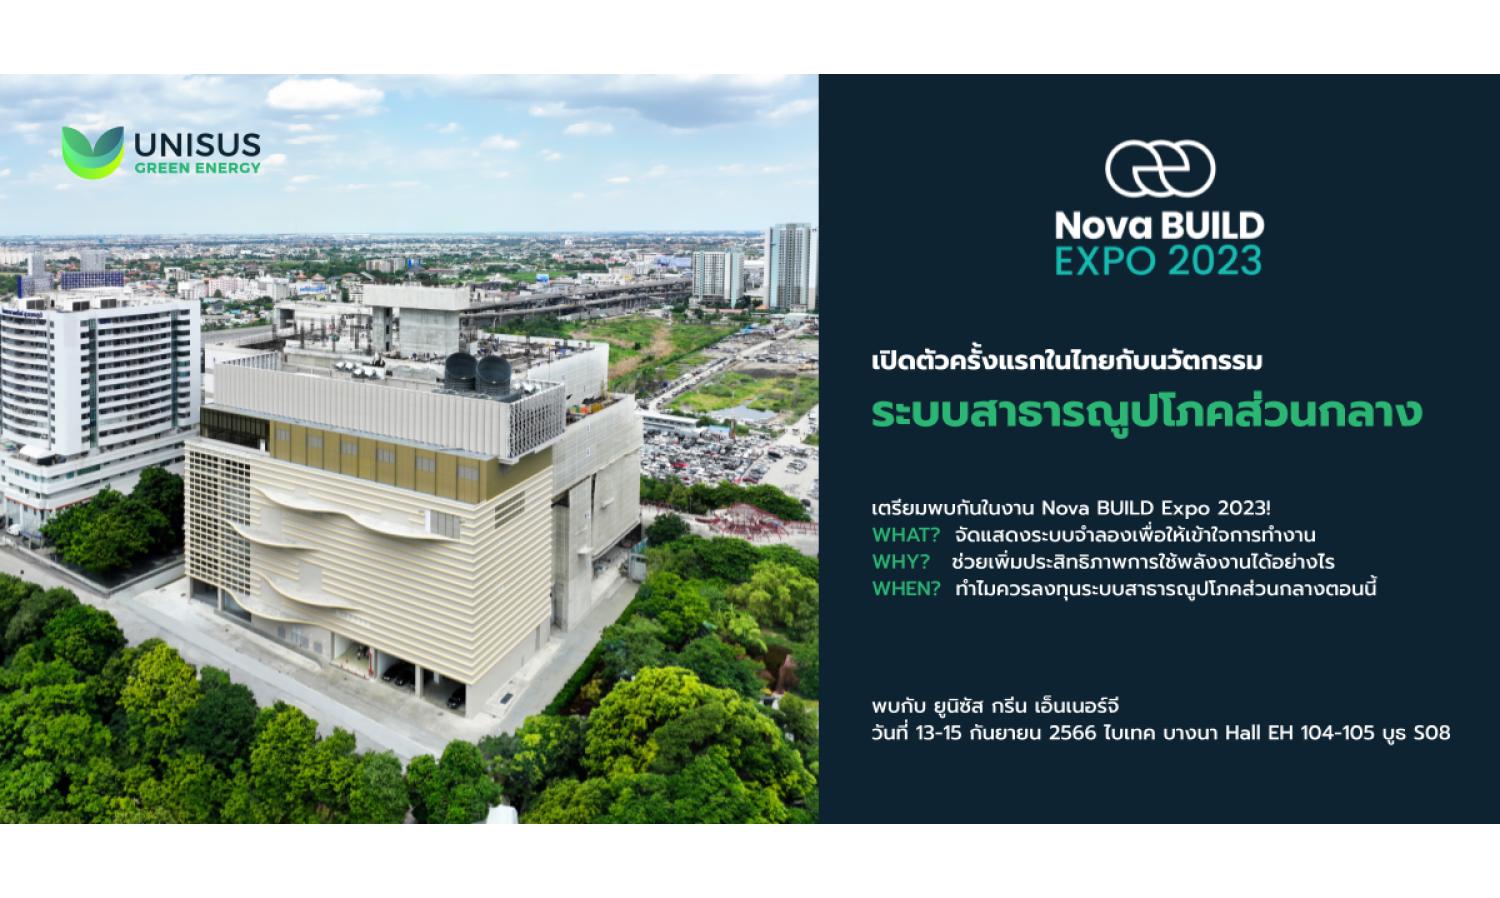 เตรียมพบกับการเปิดตัว “Unisus Green Energy” ผู้เชี่ยวชาญด้านการออกแบบและการวางระบบสาธารณูปโภคส่วนกลางสำหรับโครงการภาคเอกชนรายแรกในประเทศไทย!!